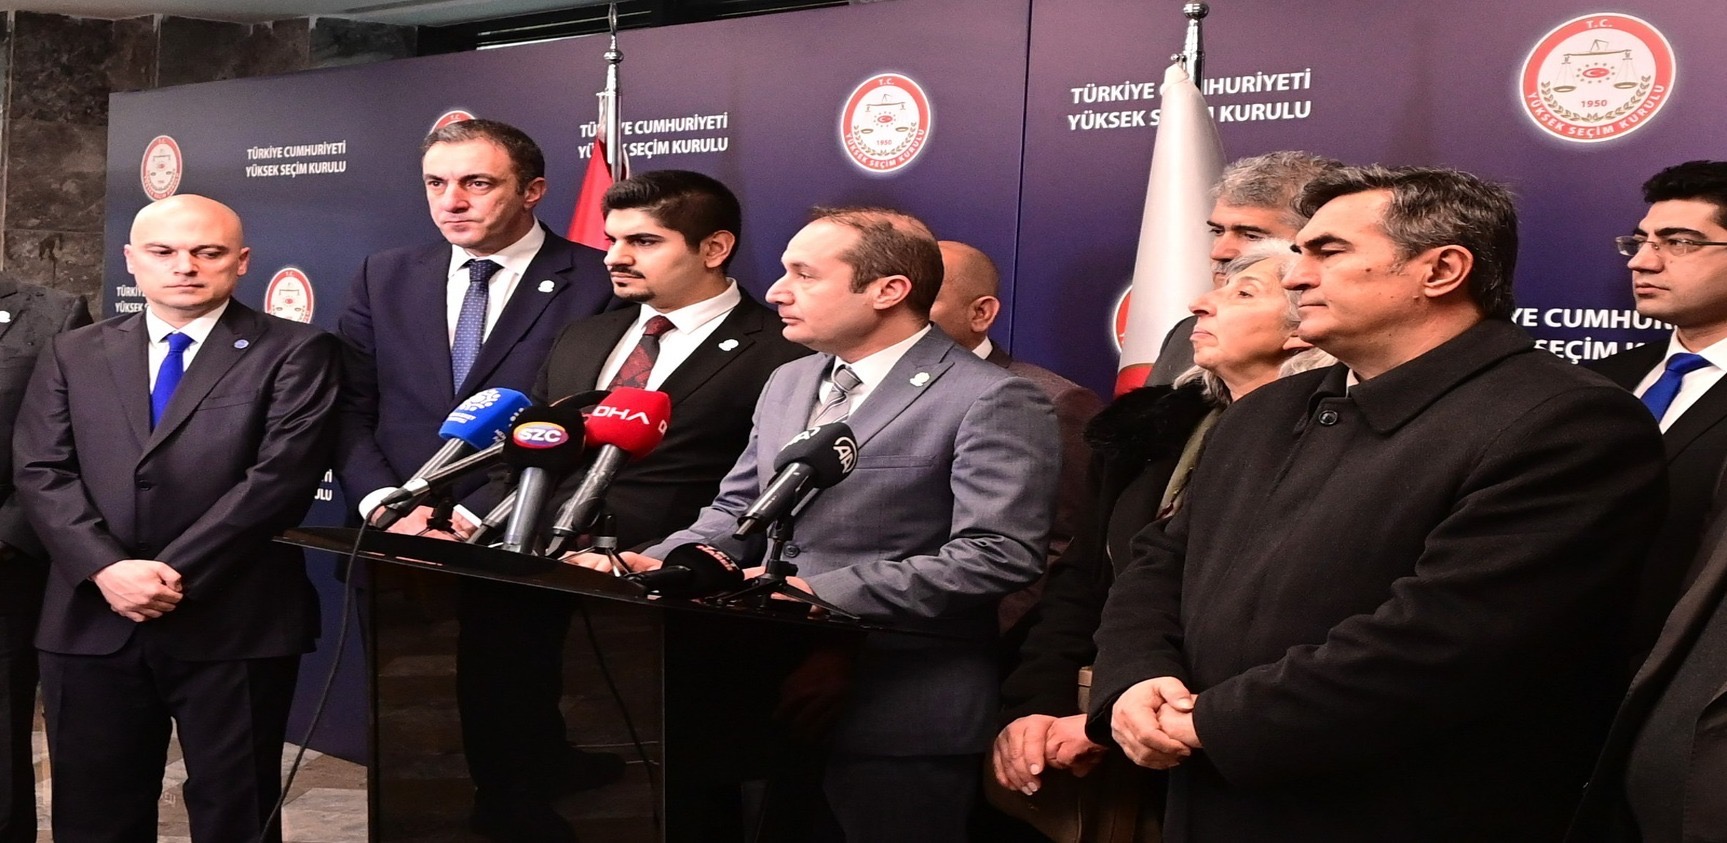 Genel Sekreterimiz Av. Halil İlker Çelik, Anayasa’nın 101 ve 116’ncı maddeleri gereği Erdoğan’ın aday olamayacağını bildirdi.